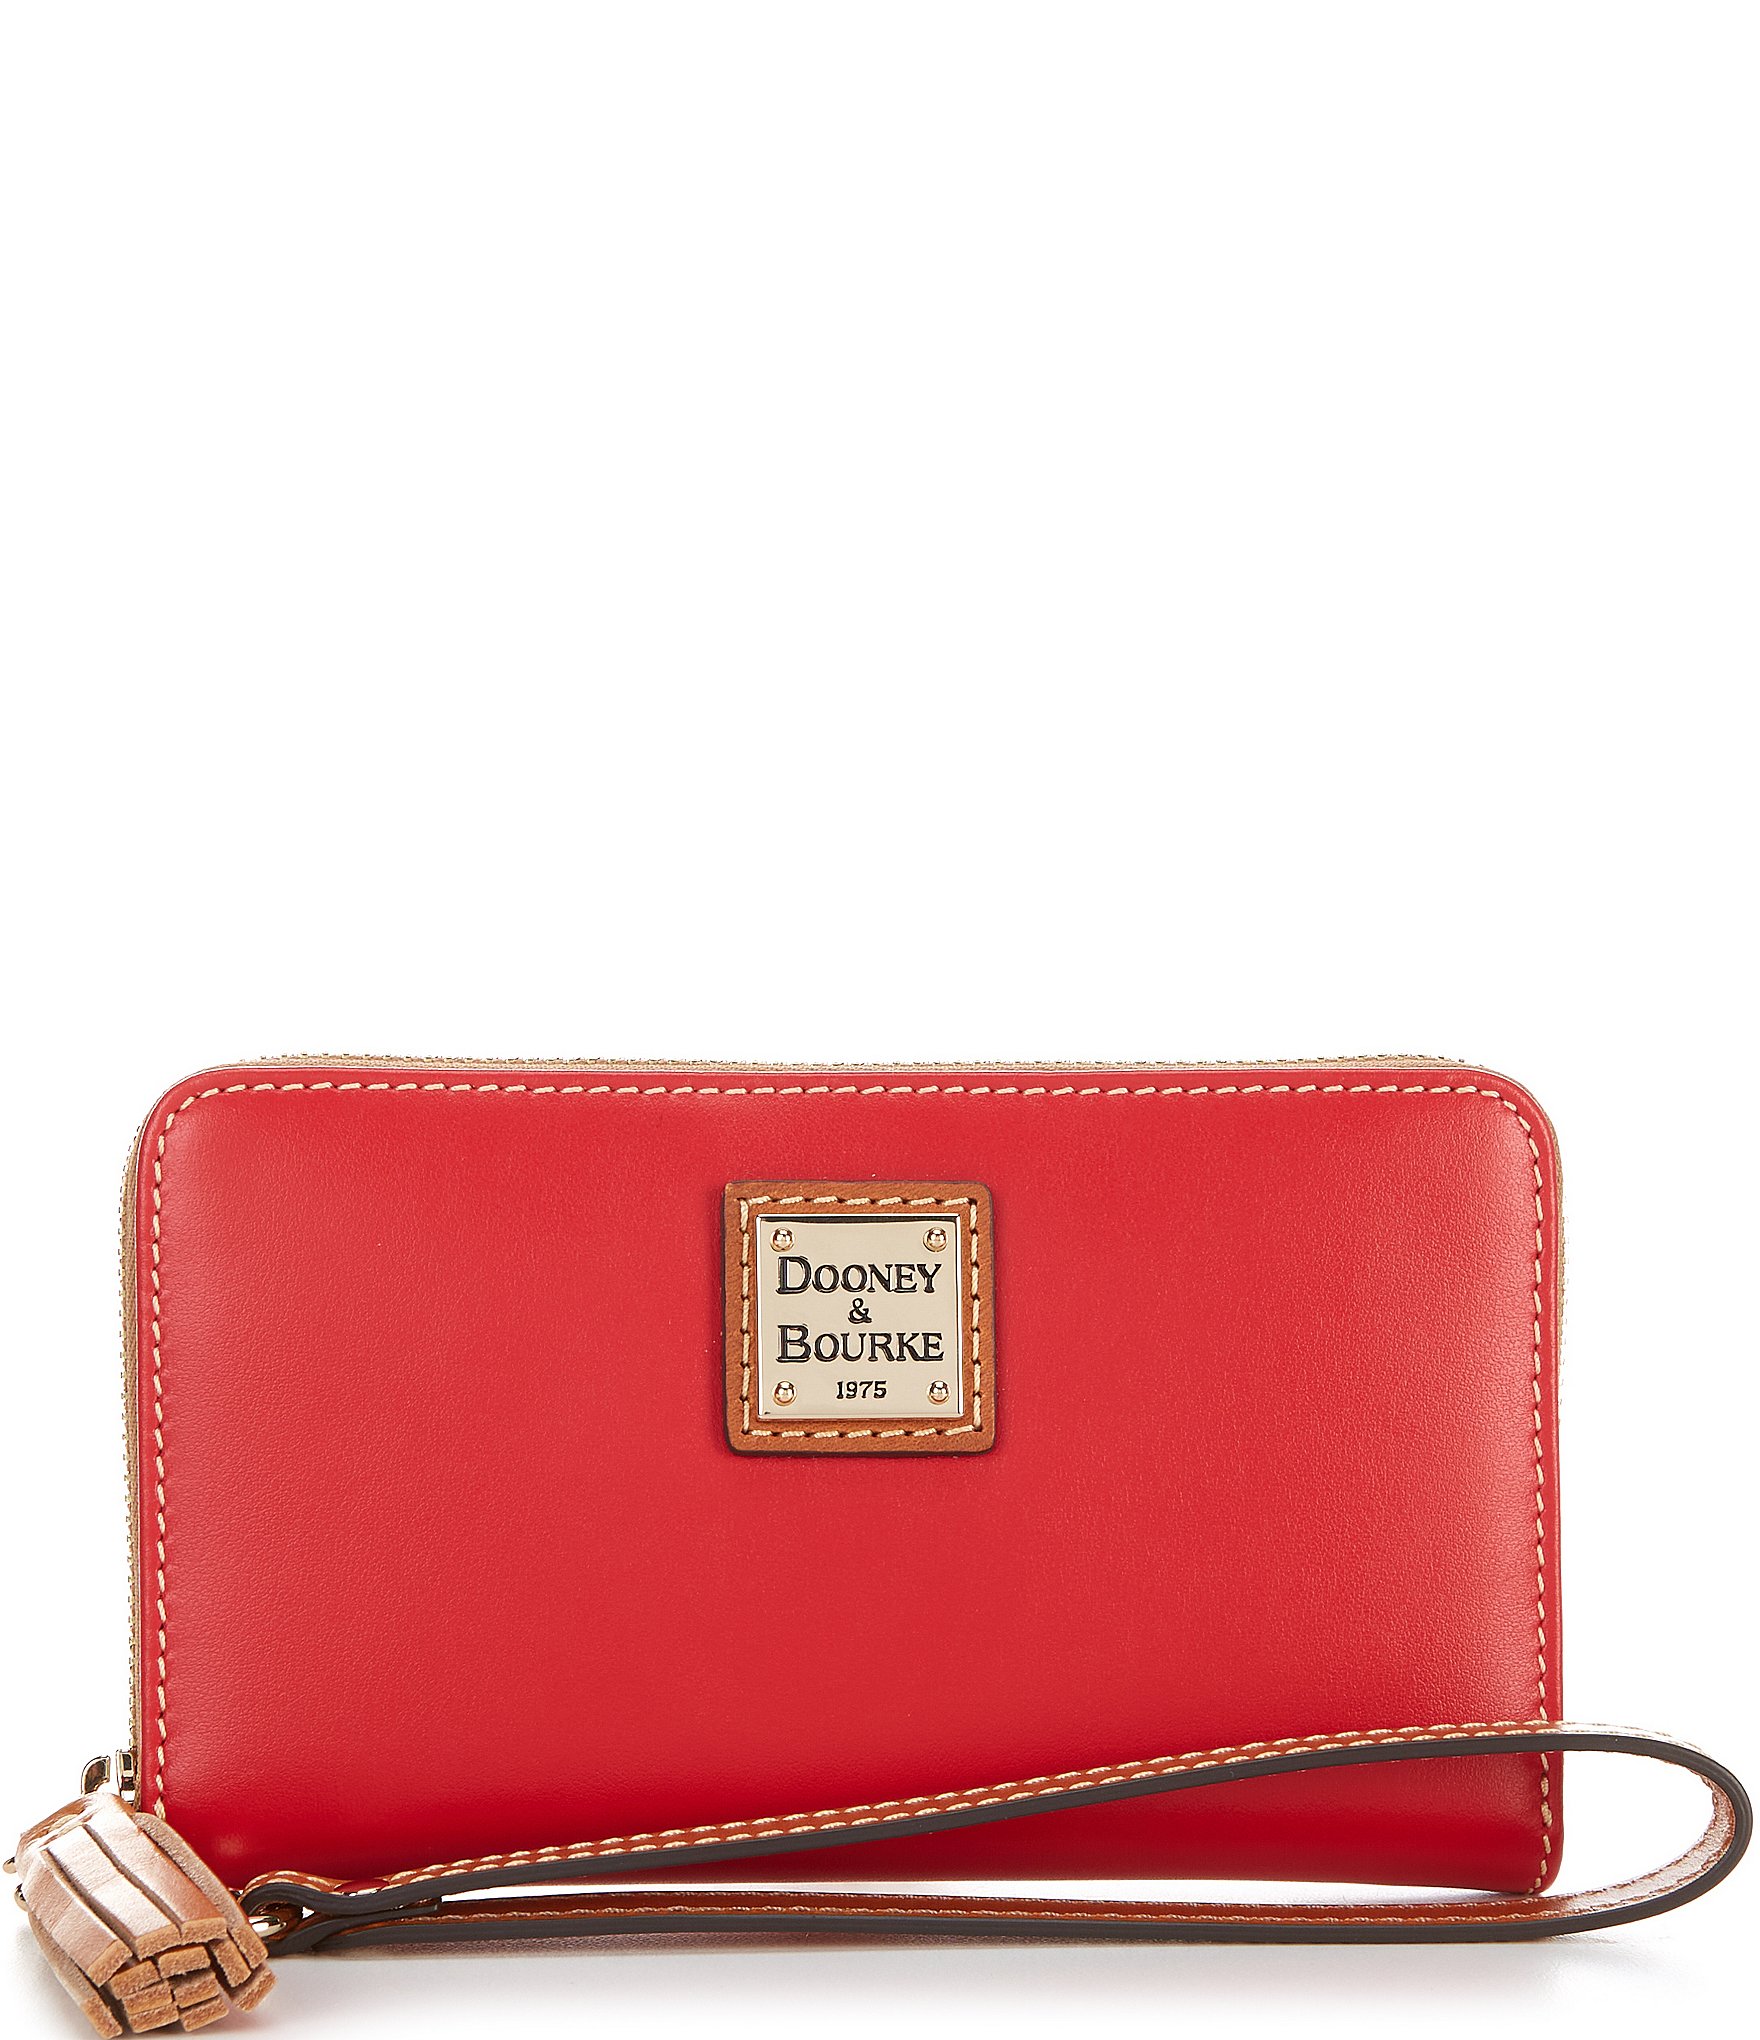 Dooney & Bourke Handbag, Wexford Leather Hobo Shoulder Bag